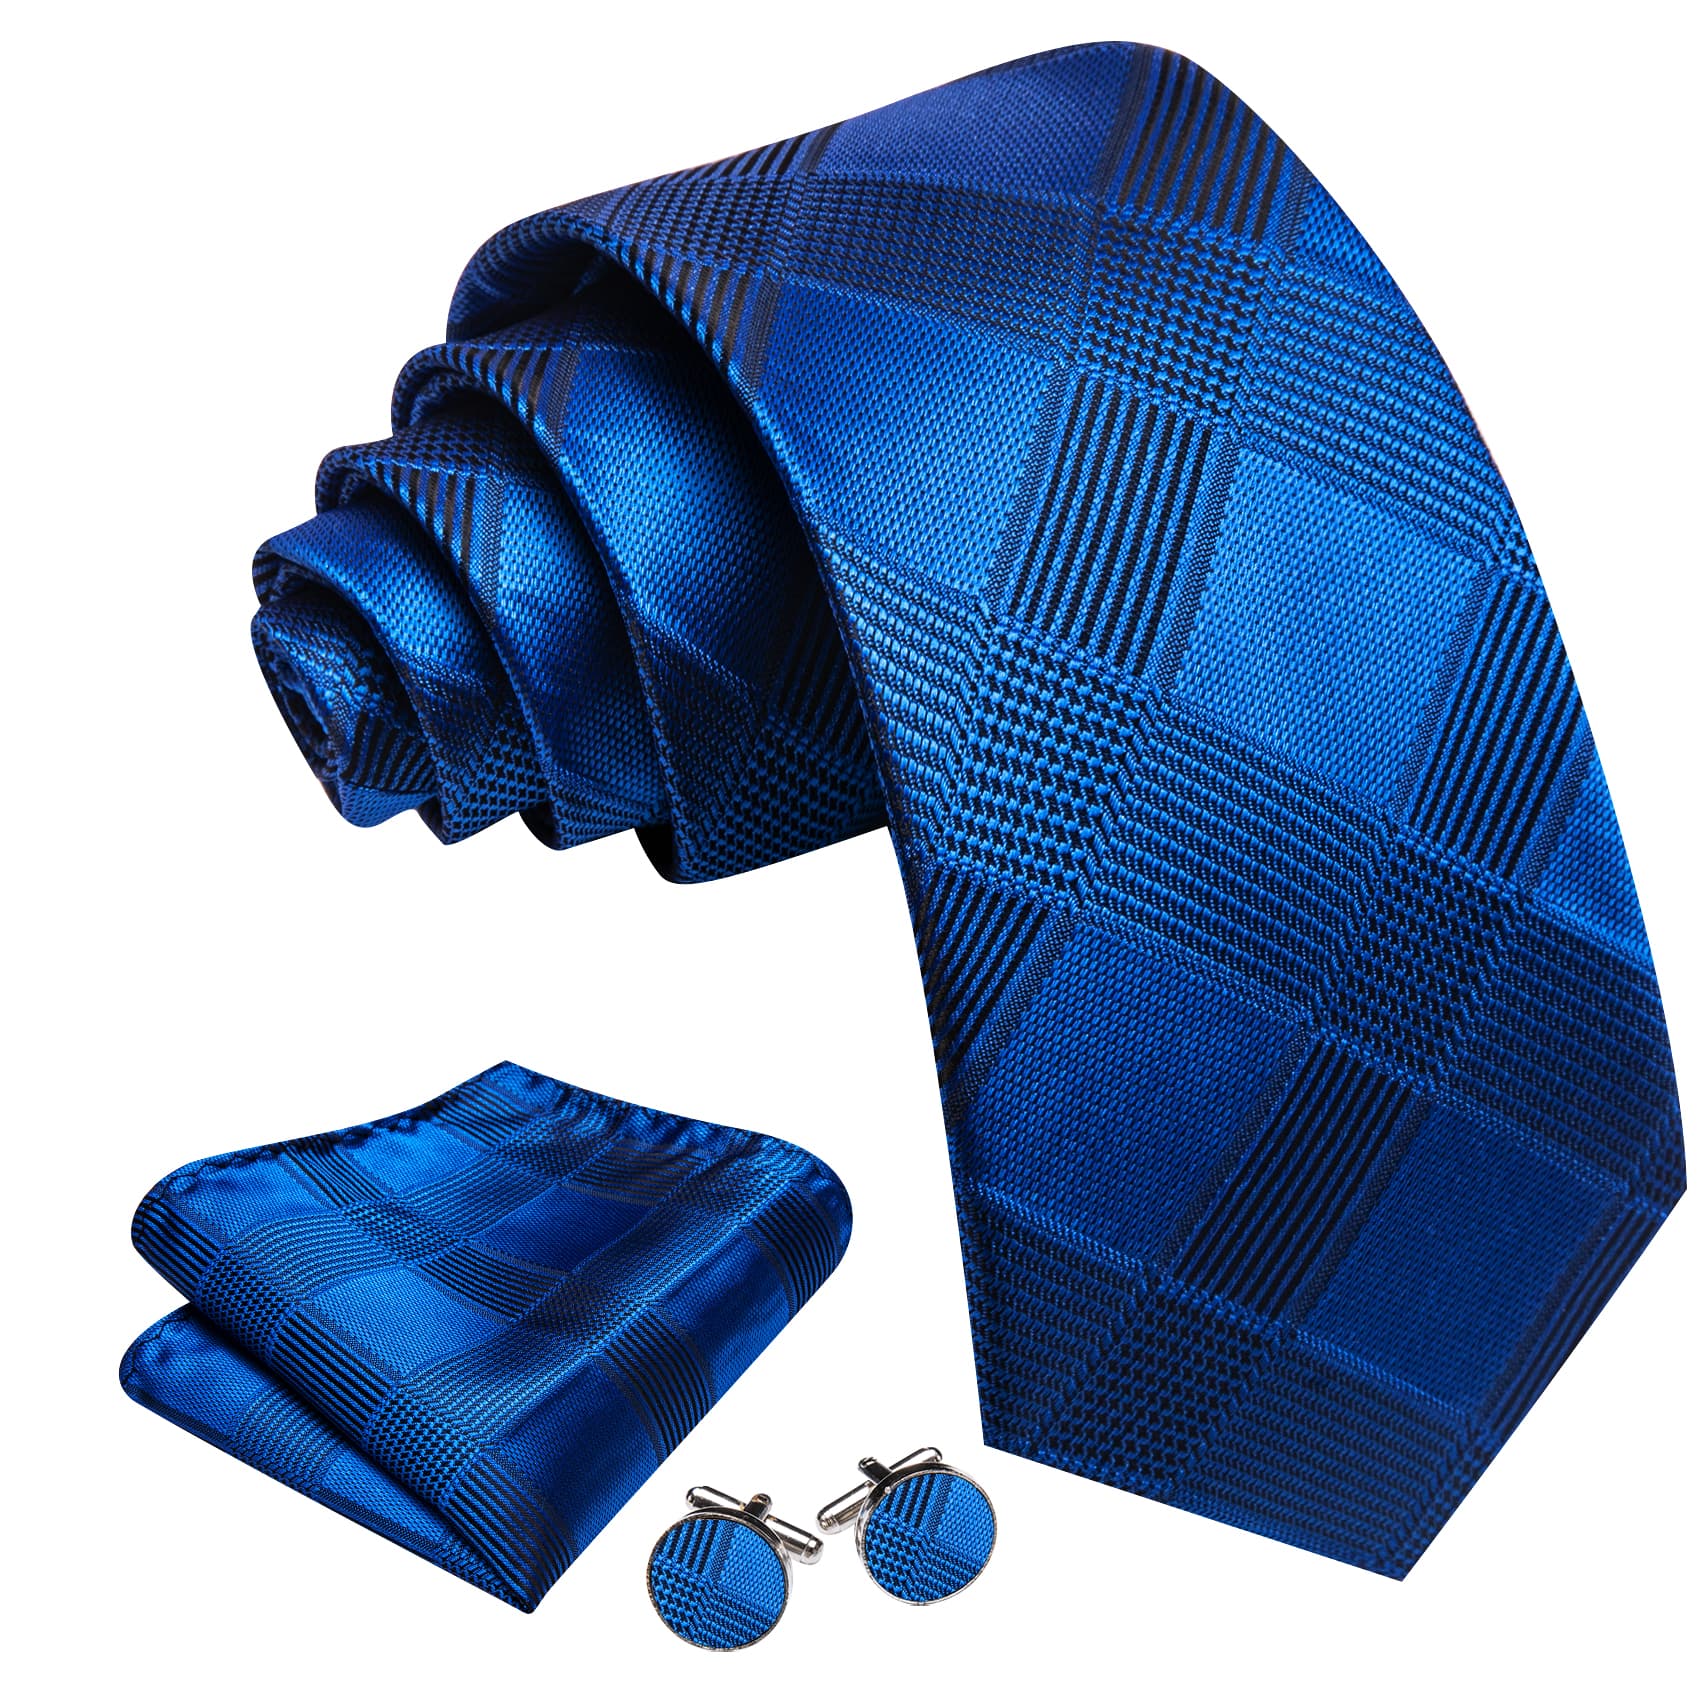  Blue Plaid Tie Men's Business Necktie Hanky Cufflinks Set